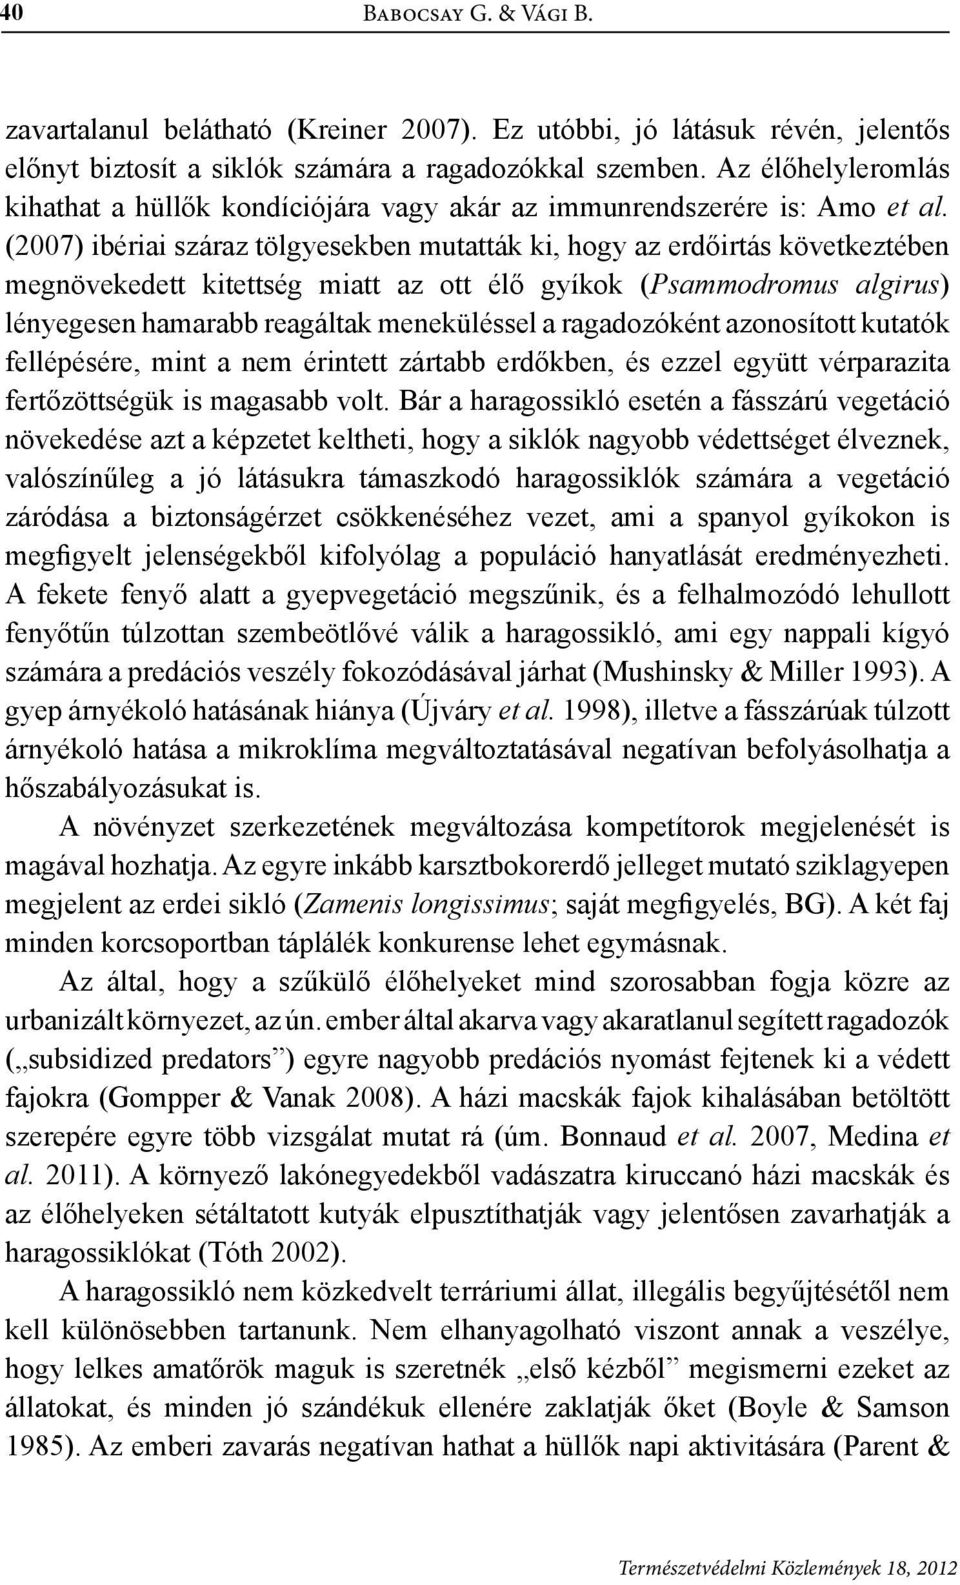 (2007) ibériai száraz tölgyesekben mutatták ki, hogy az erdőirtás következtében megnövekedett kitettség miatt az ott élő gyíkok (Psammodromus algirus) lényegesen hamarabb reagáltak meneküléssel a